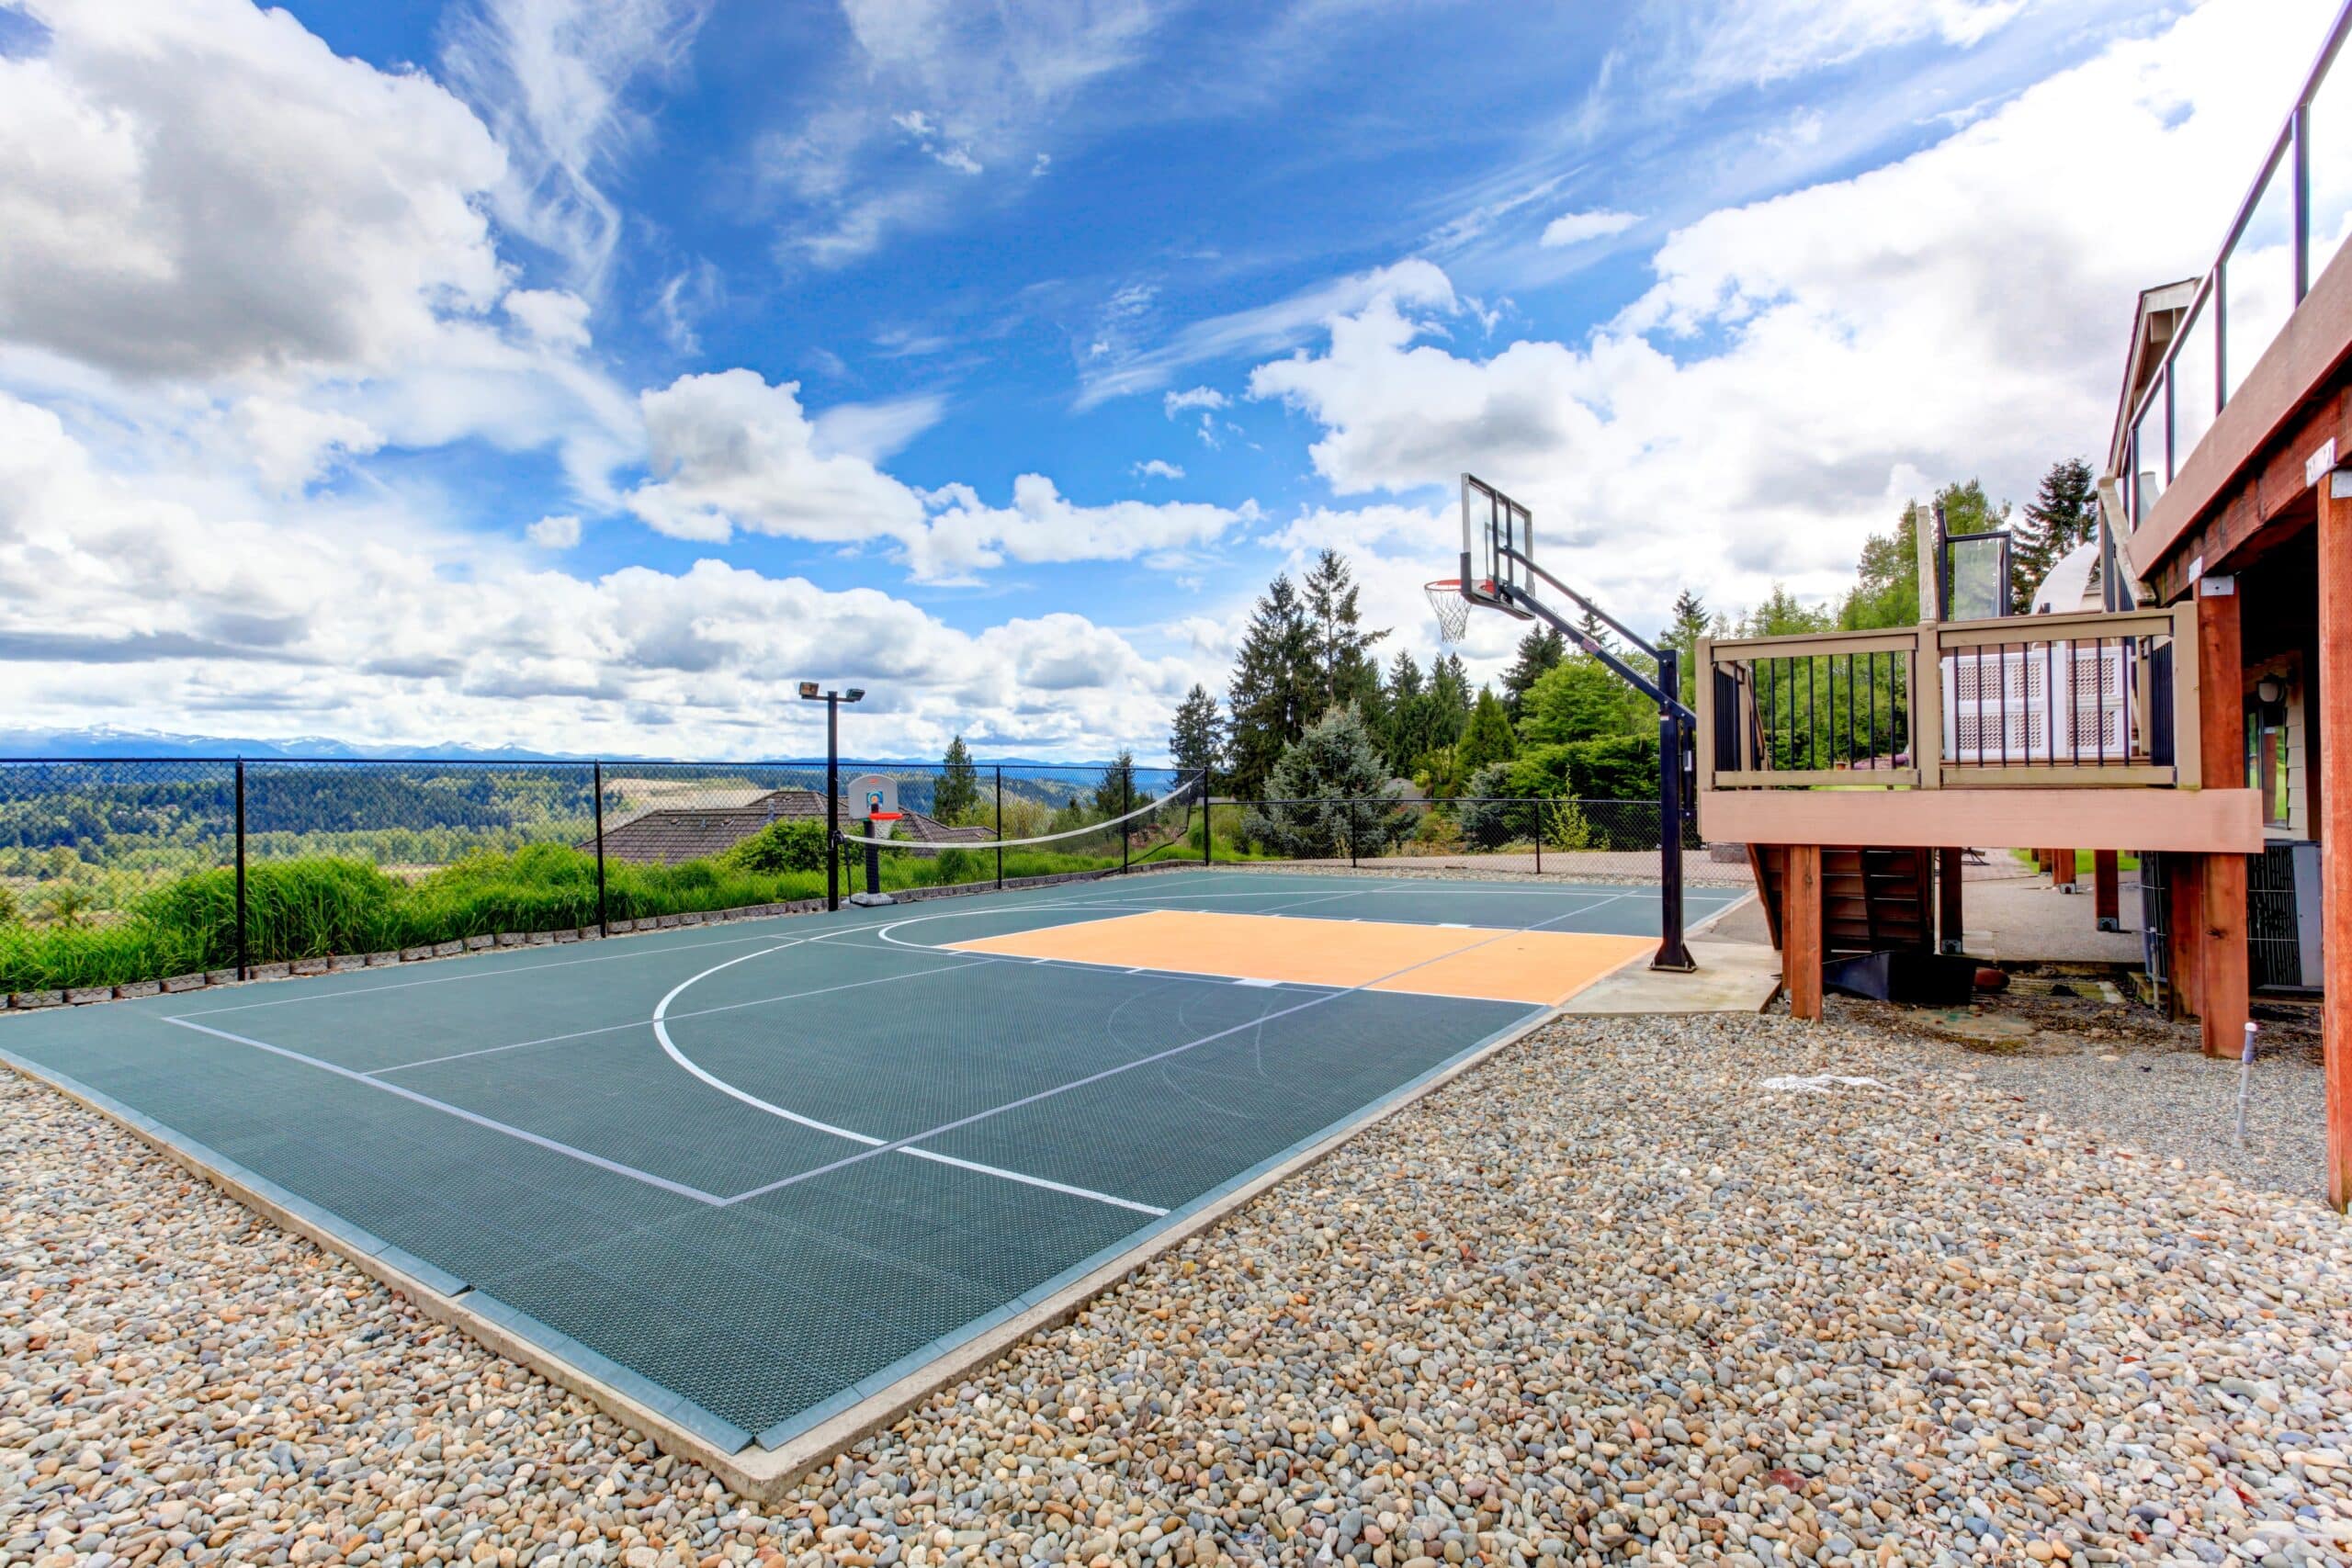 Beautiful backyard basketball court